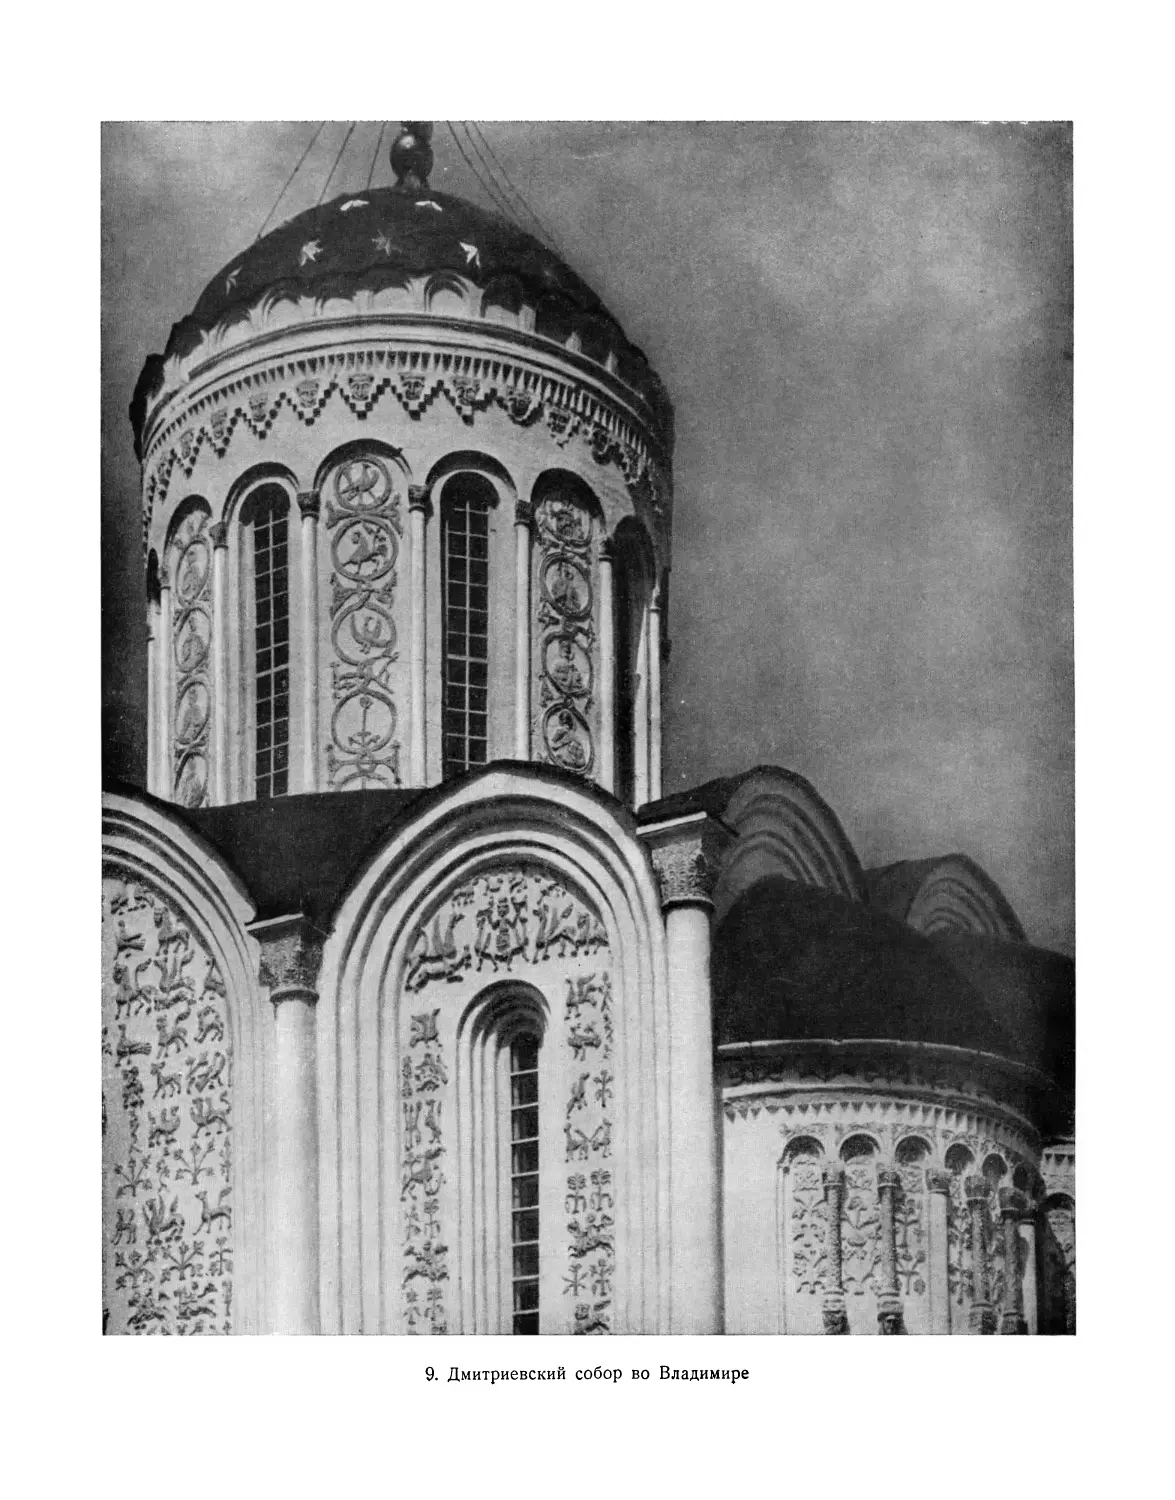 Вклейка. 9. Дмитриевский собор во Владимире. 1194—1197. Купол и часть южной стены